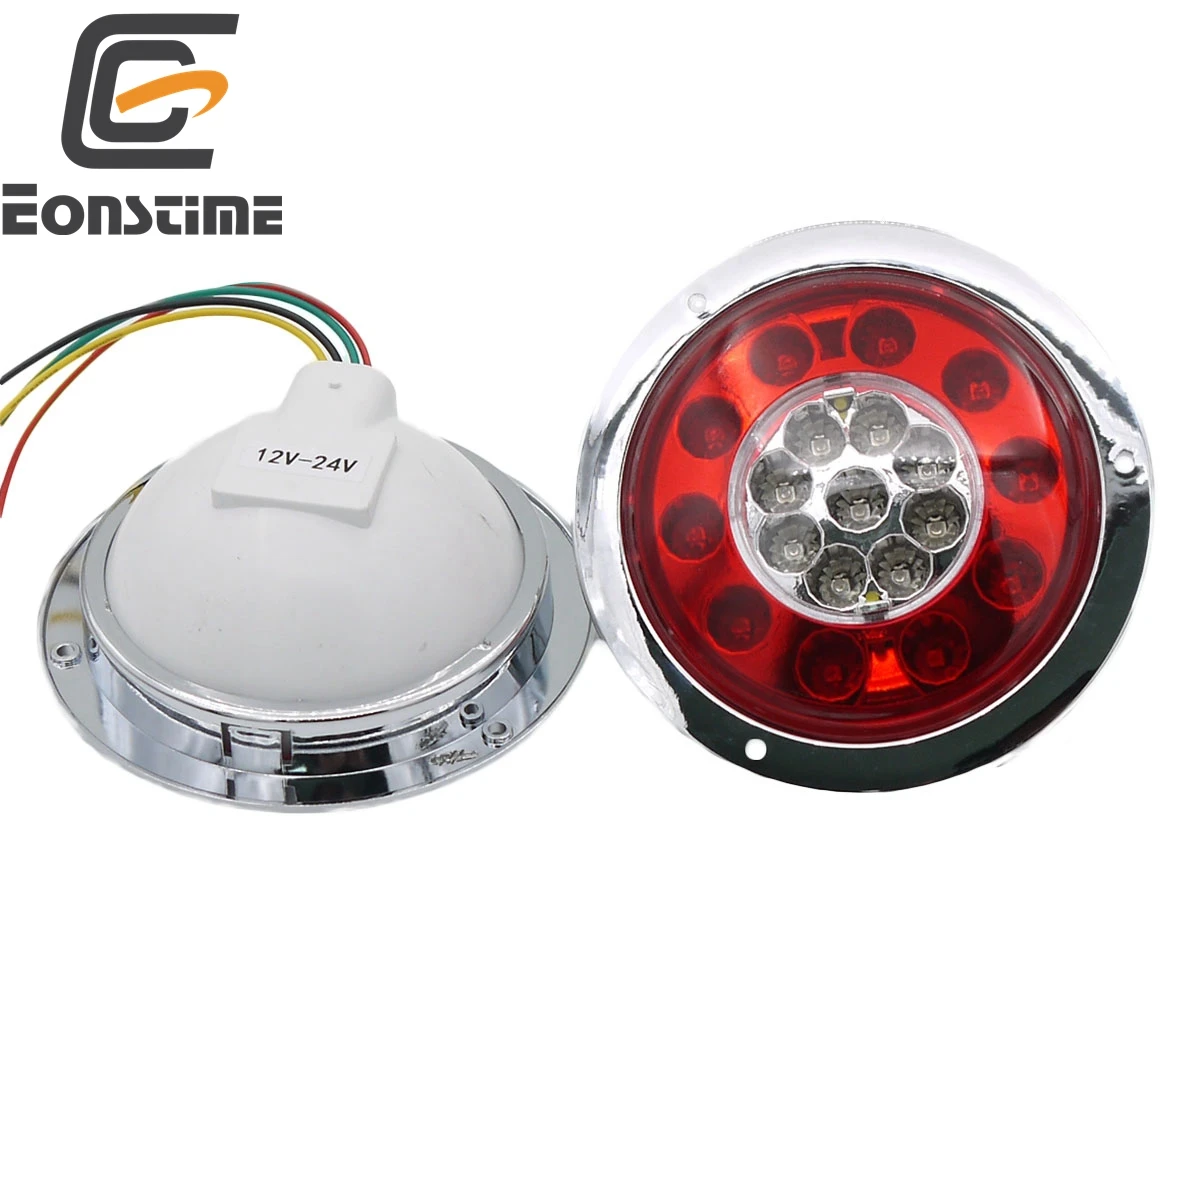 Eonstime 2 шт. 14 светодиодный s 12 В/24 В Автомобильный светодиодный светильник для грузовика-каравана, лодочного прицепа, стоп-сигнал, задний тормозной светильник, лампа для прицепа, задний светильник